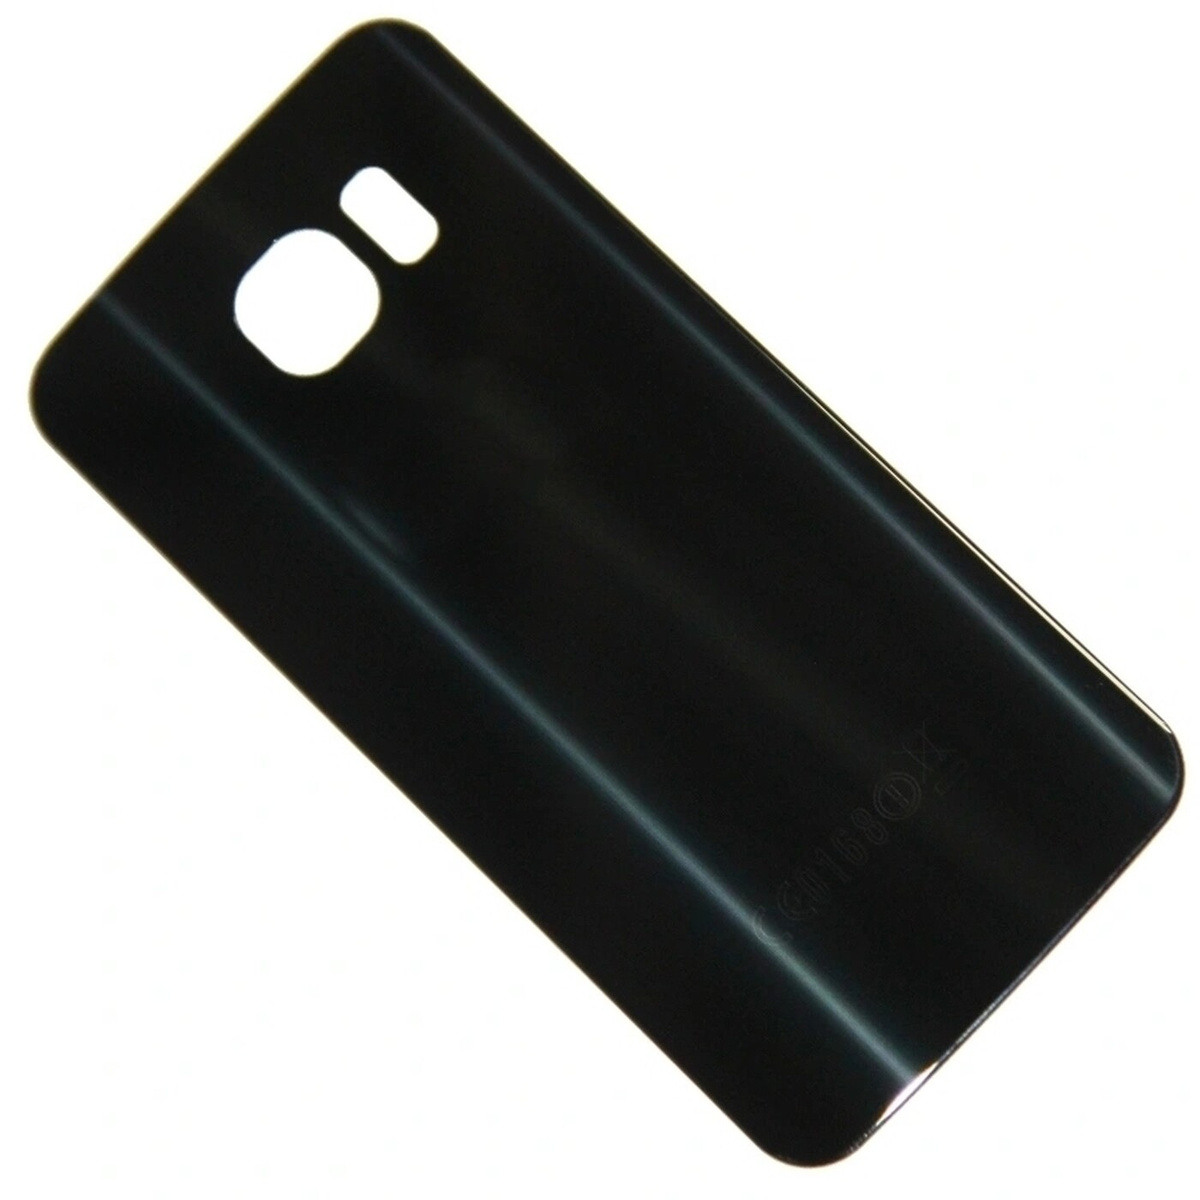 Задняя крышка для Samsung G920F/G920FD (S6/S6 Duos) (черный)